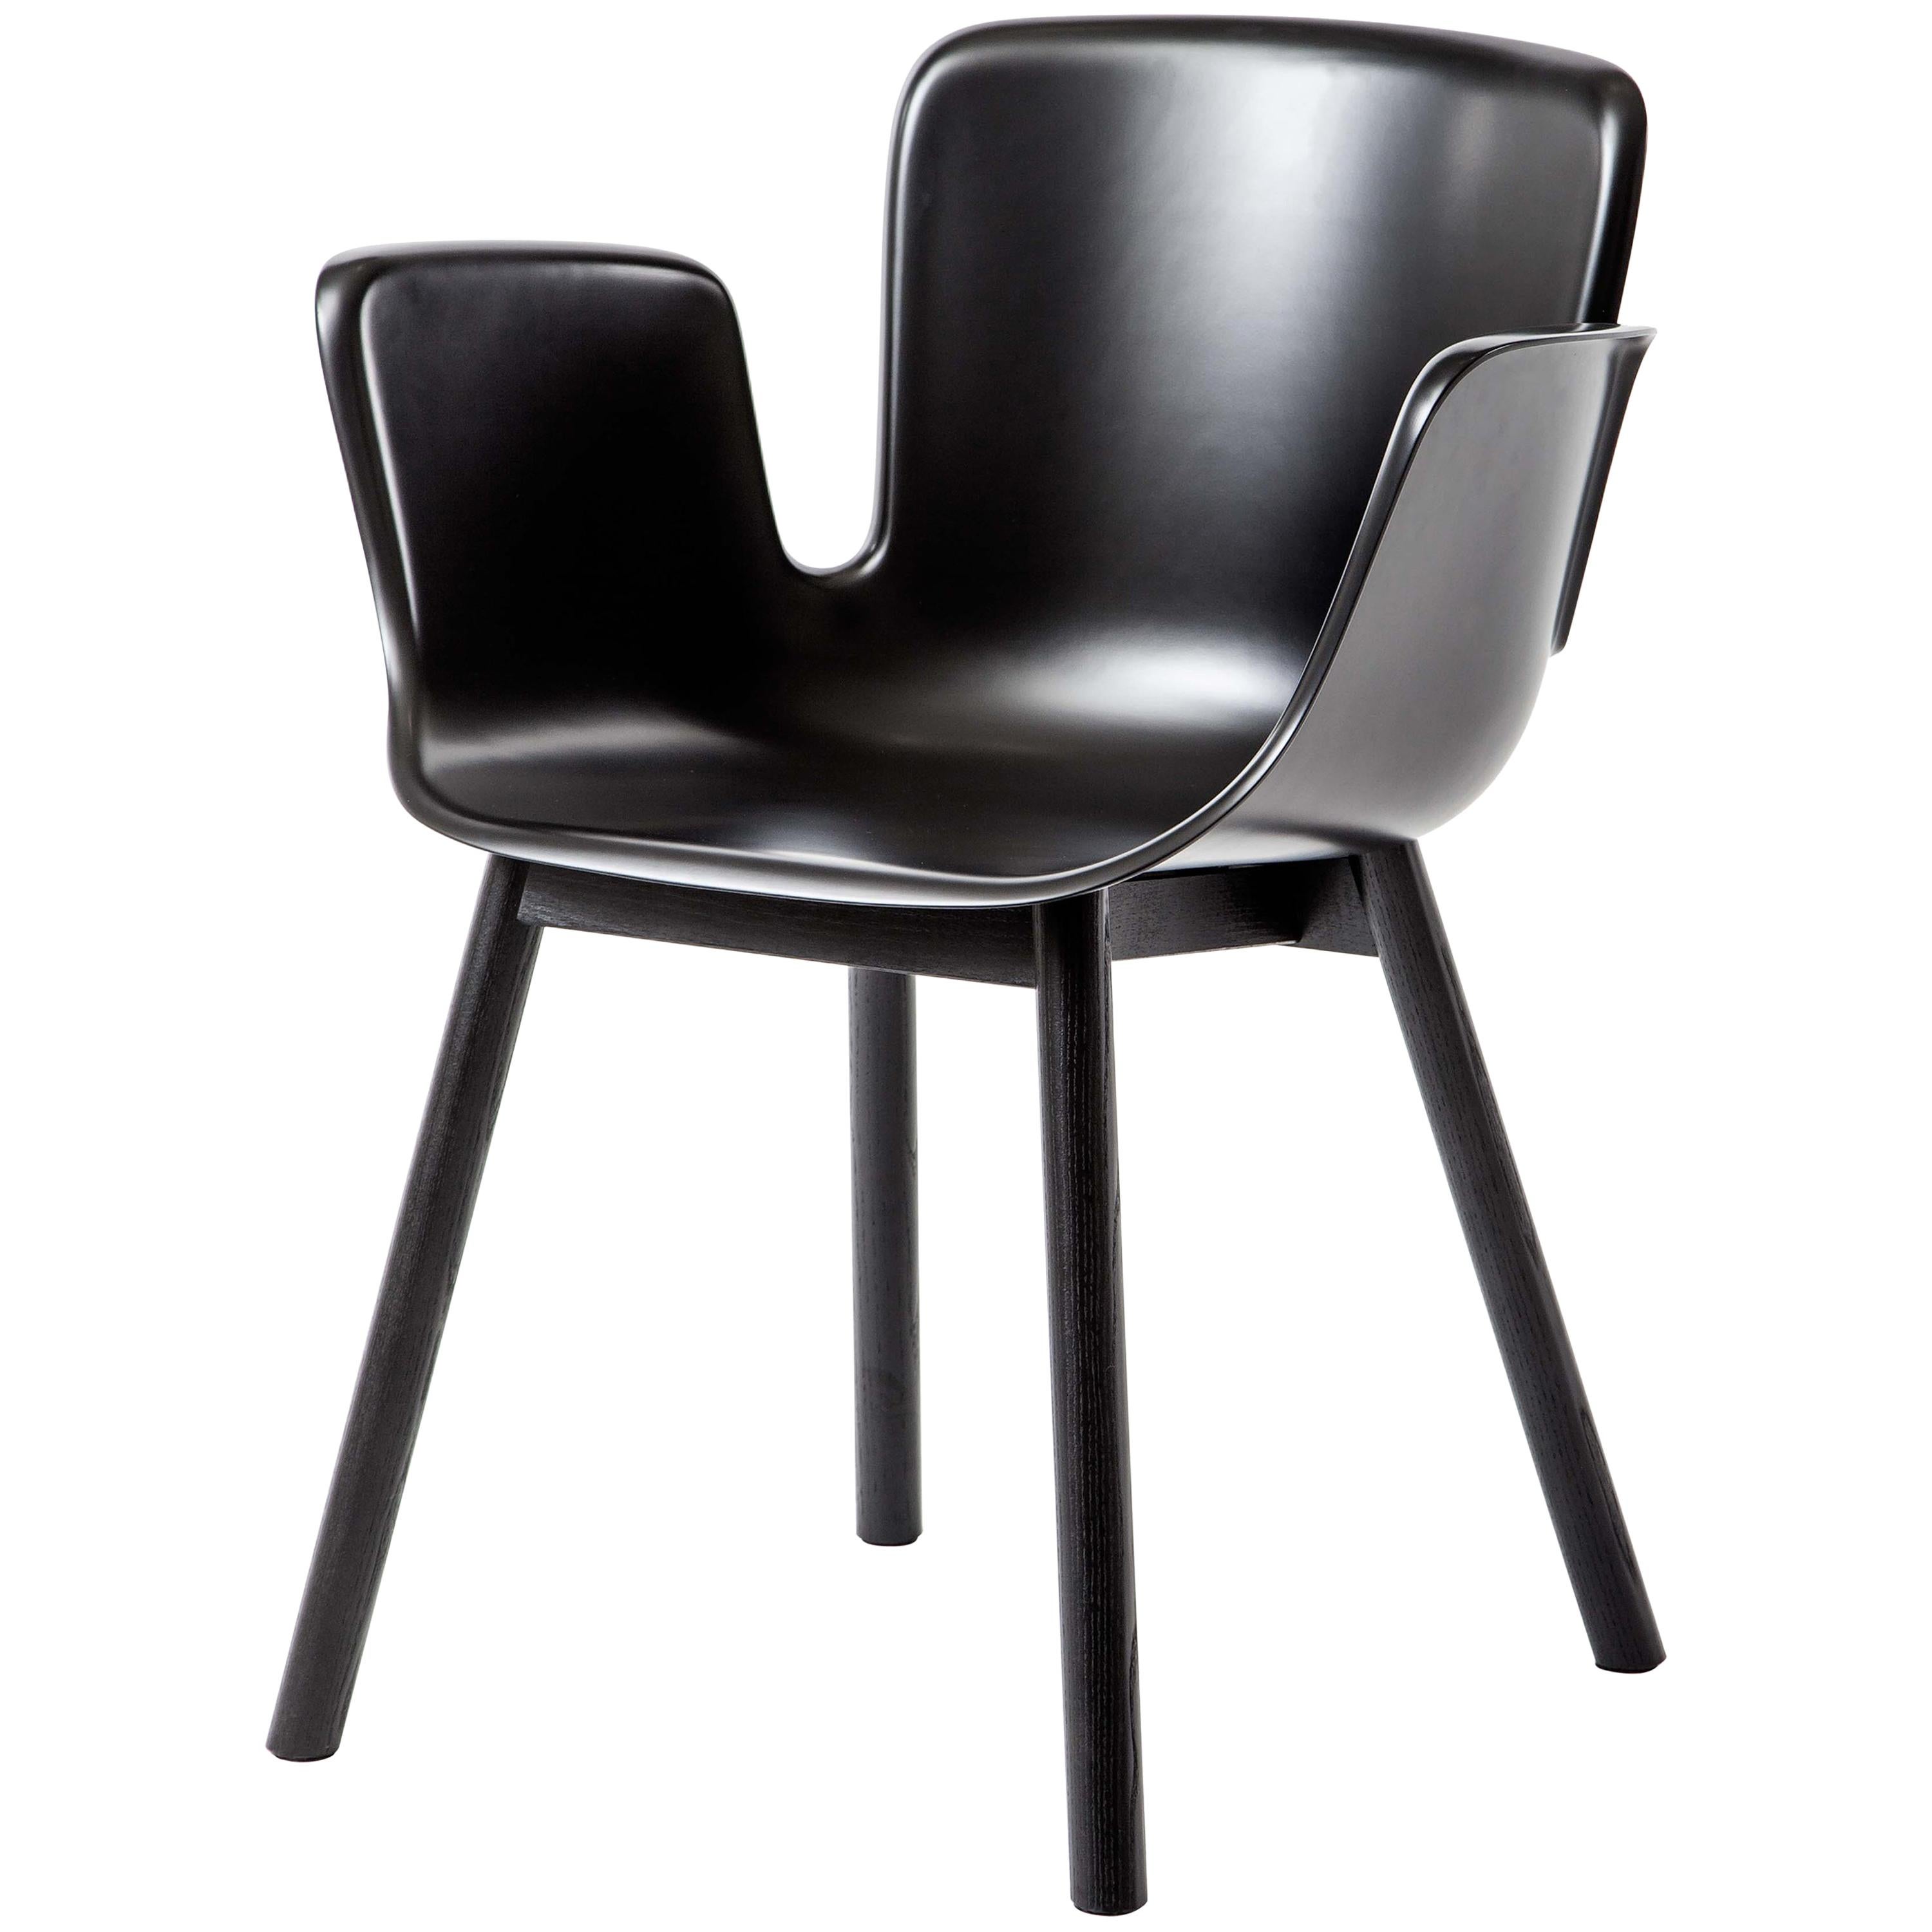 Chaise Juli en plastique avec assise noire graphite Werner Aisslinger pour Cappellini